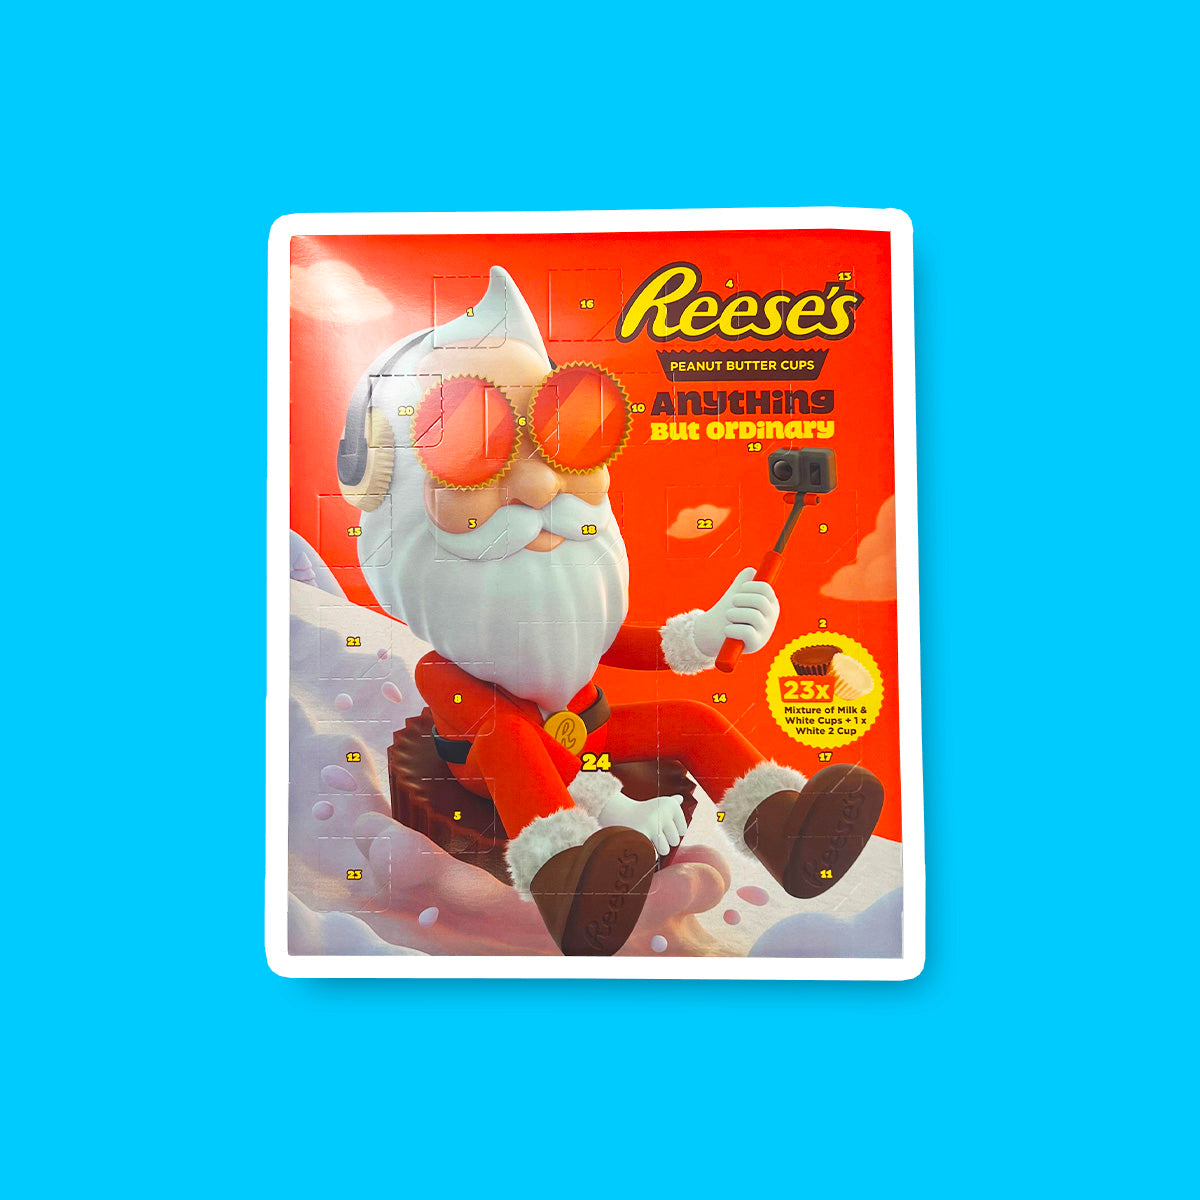 Un carton orange sur fond bleu avec un père Noël stylé qui se filme entrain de descendre une montage enneigée assis sur un chocolat Reese’s géant